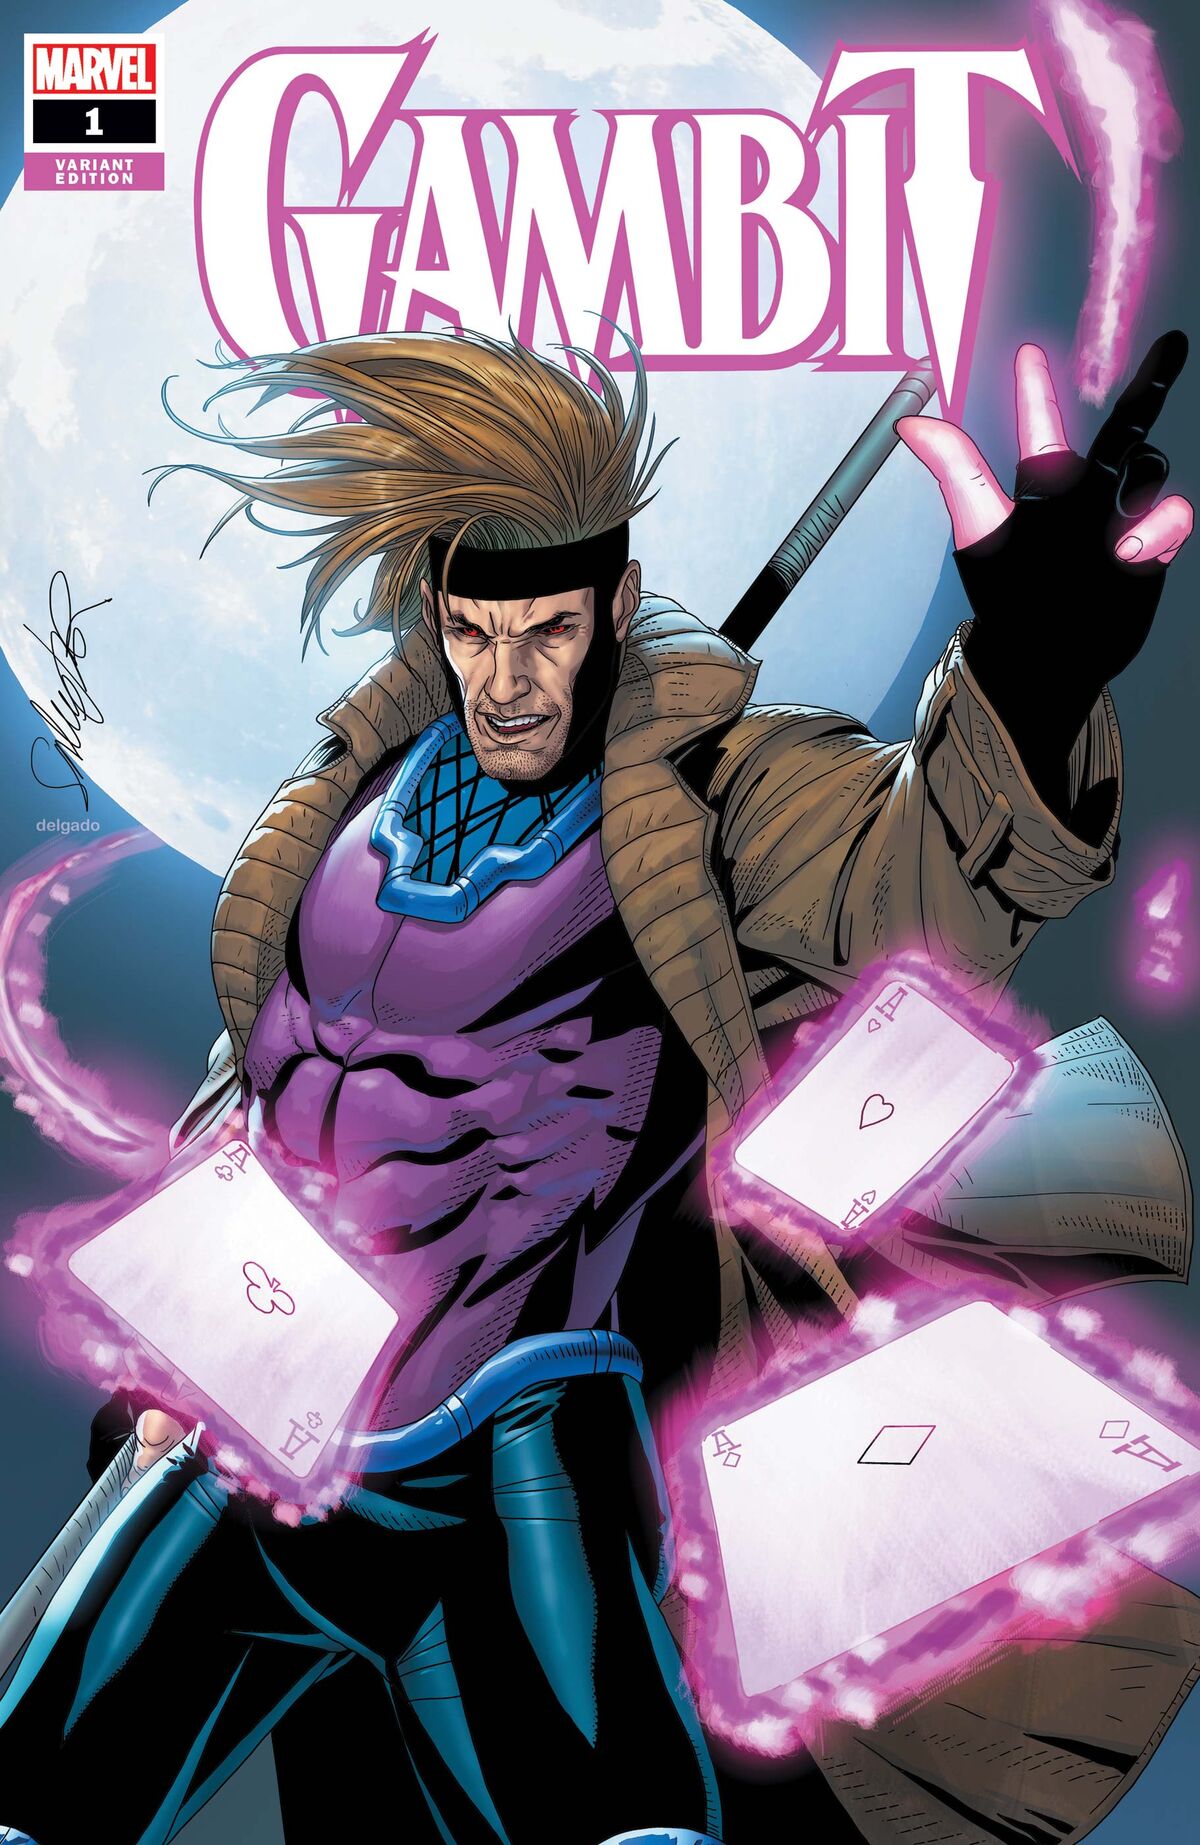 Gambit (Marvel Comics) (Comic Book) - TV Tropes